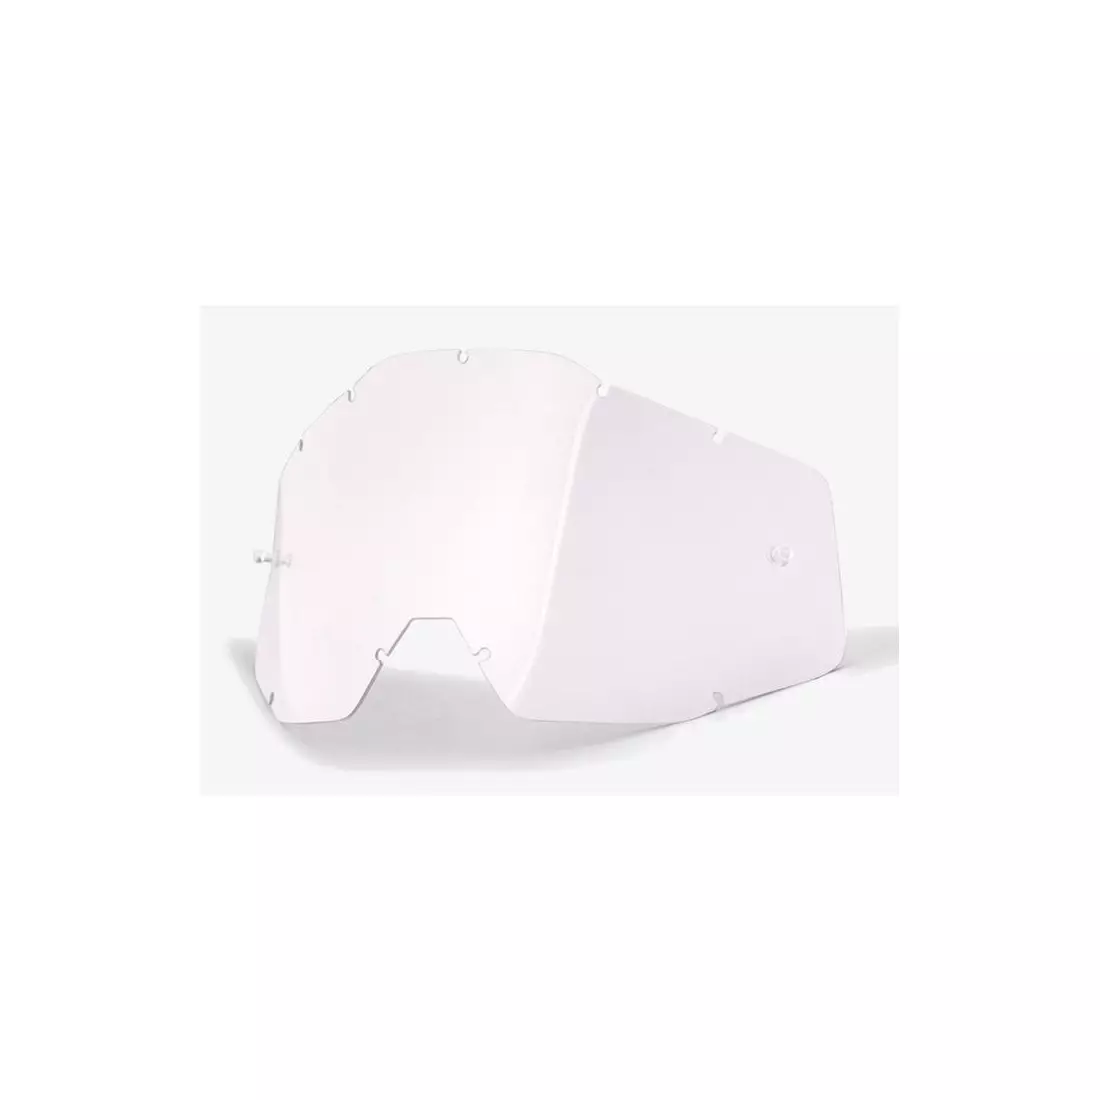 100% brýlová čočka racecraft/accuri/strata (čiré čočky Anti-Fog) STO-51001-010-02